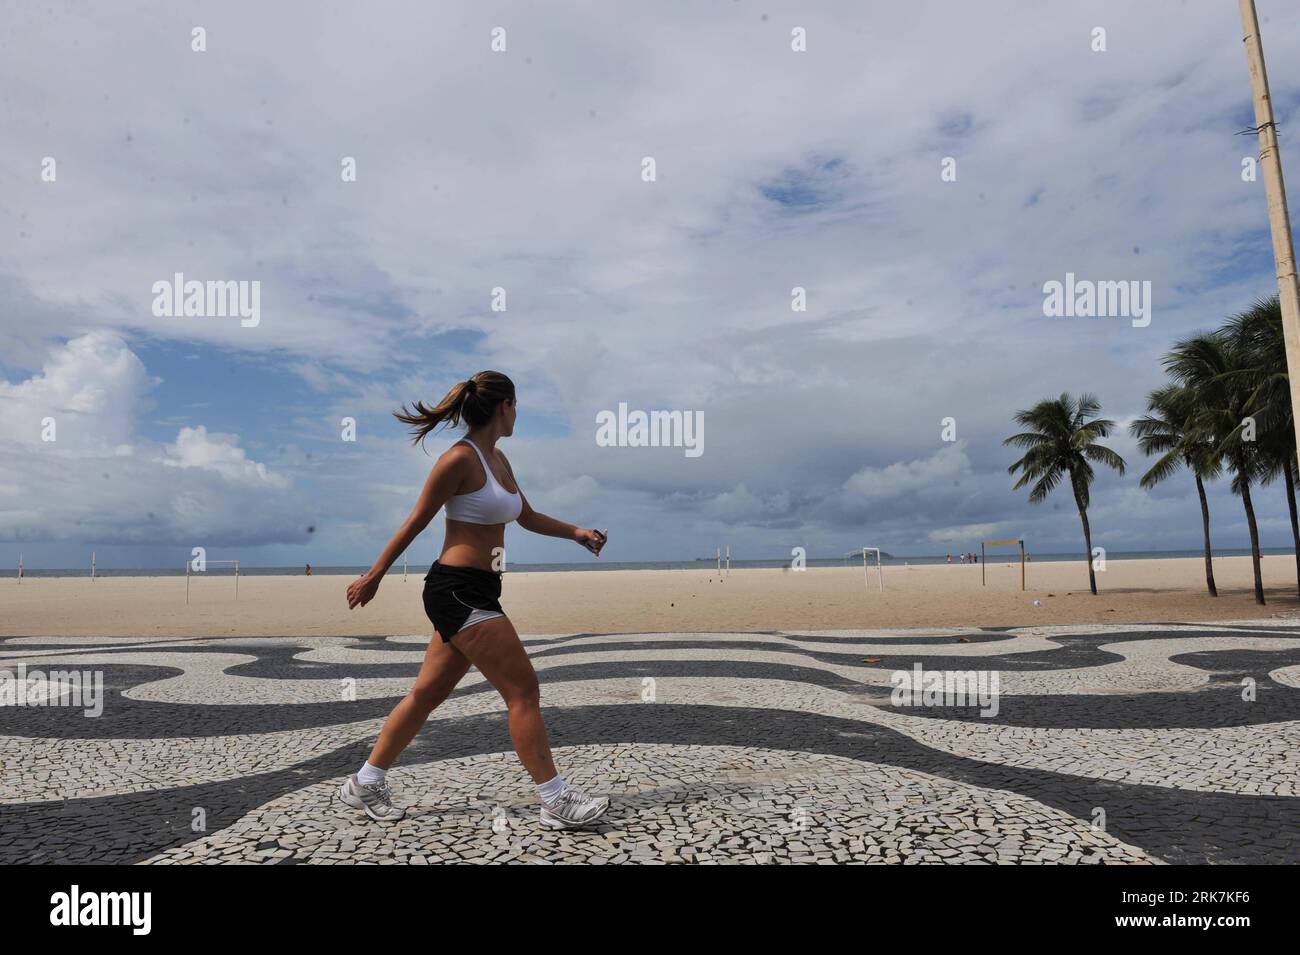 Bildnummer: 53923752 Datum: 07.04.2010 Copyright: imago/Xinhua (100407) -- RIO DE JANEIRO, 7. April 2010 (Xinhua) -- A Woman Walks by the Beach at Copacabana in Rio de Janeiro, Brasilien, 7. April 2010. Die Todesopfer, die durch die Regenfälle verursacht wurden, die seit Montag über Rio de Janeiros U-Bahn-Gebiet fallen, erreichten 82, teilte die staatliche Feuerwehr am Dienstag mit. (Xinhua/Song Weiwei) (cy) (2)BRASILIEN-RIO DE JANEIRO-WETTER-SONNIG PUBLICATIONxNOTxINxCHN Reisen BRA kbdig xsk 2010 quer o0 Strand Bildnummer 53923752 Datum 07 04 2010 Copyright Imago XINHUA Rio de Janeiro 7. April 2010 XINHUA A Woman Walk Stockfoto